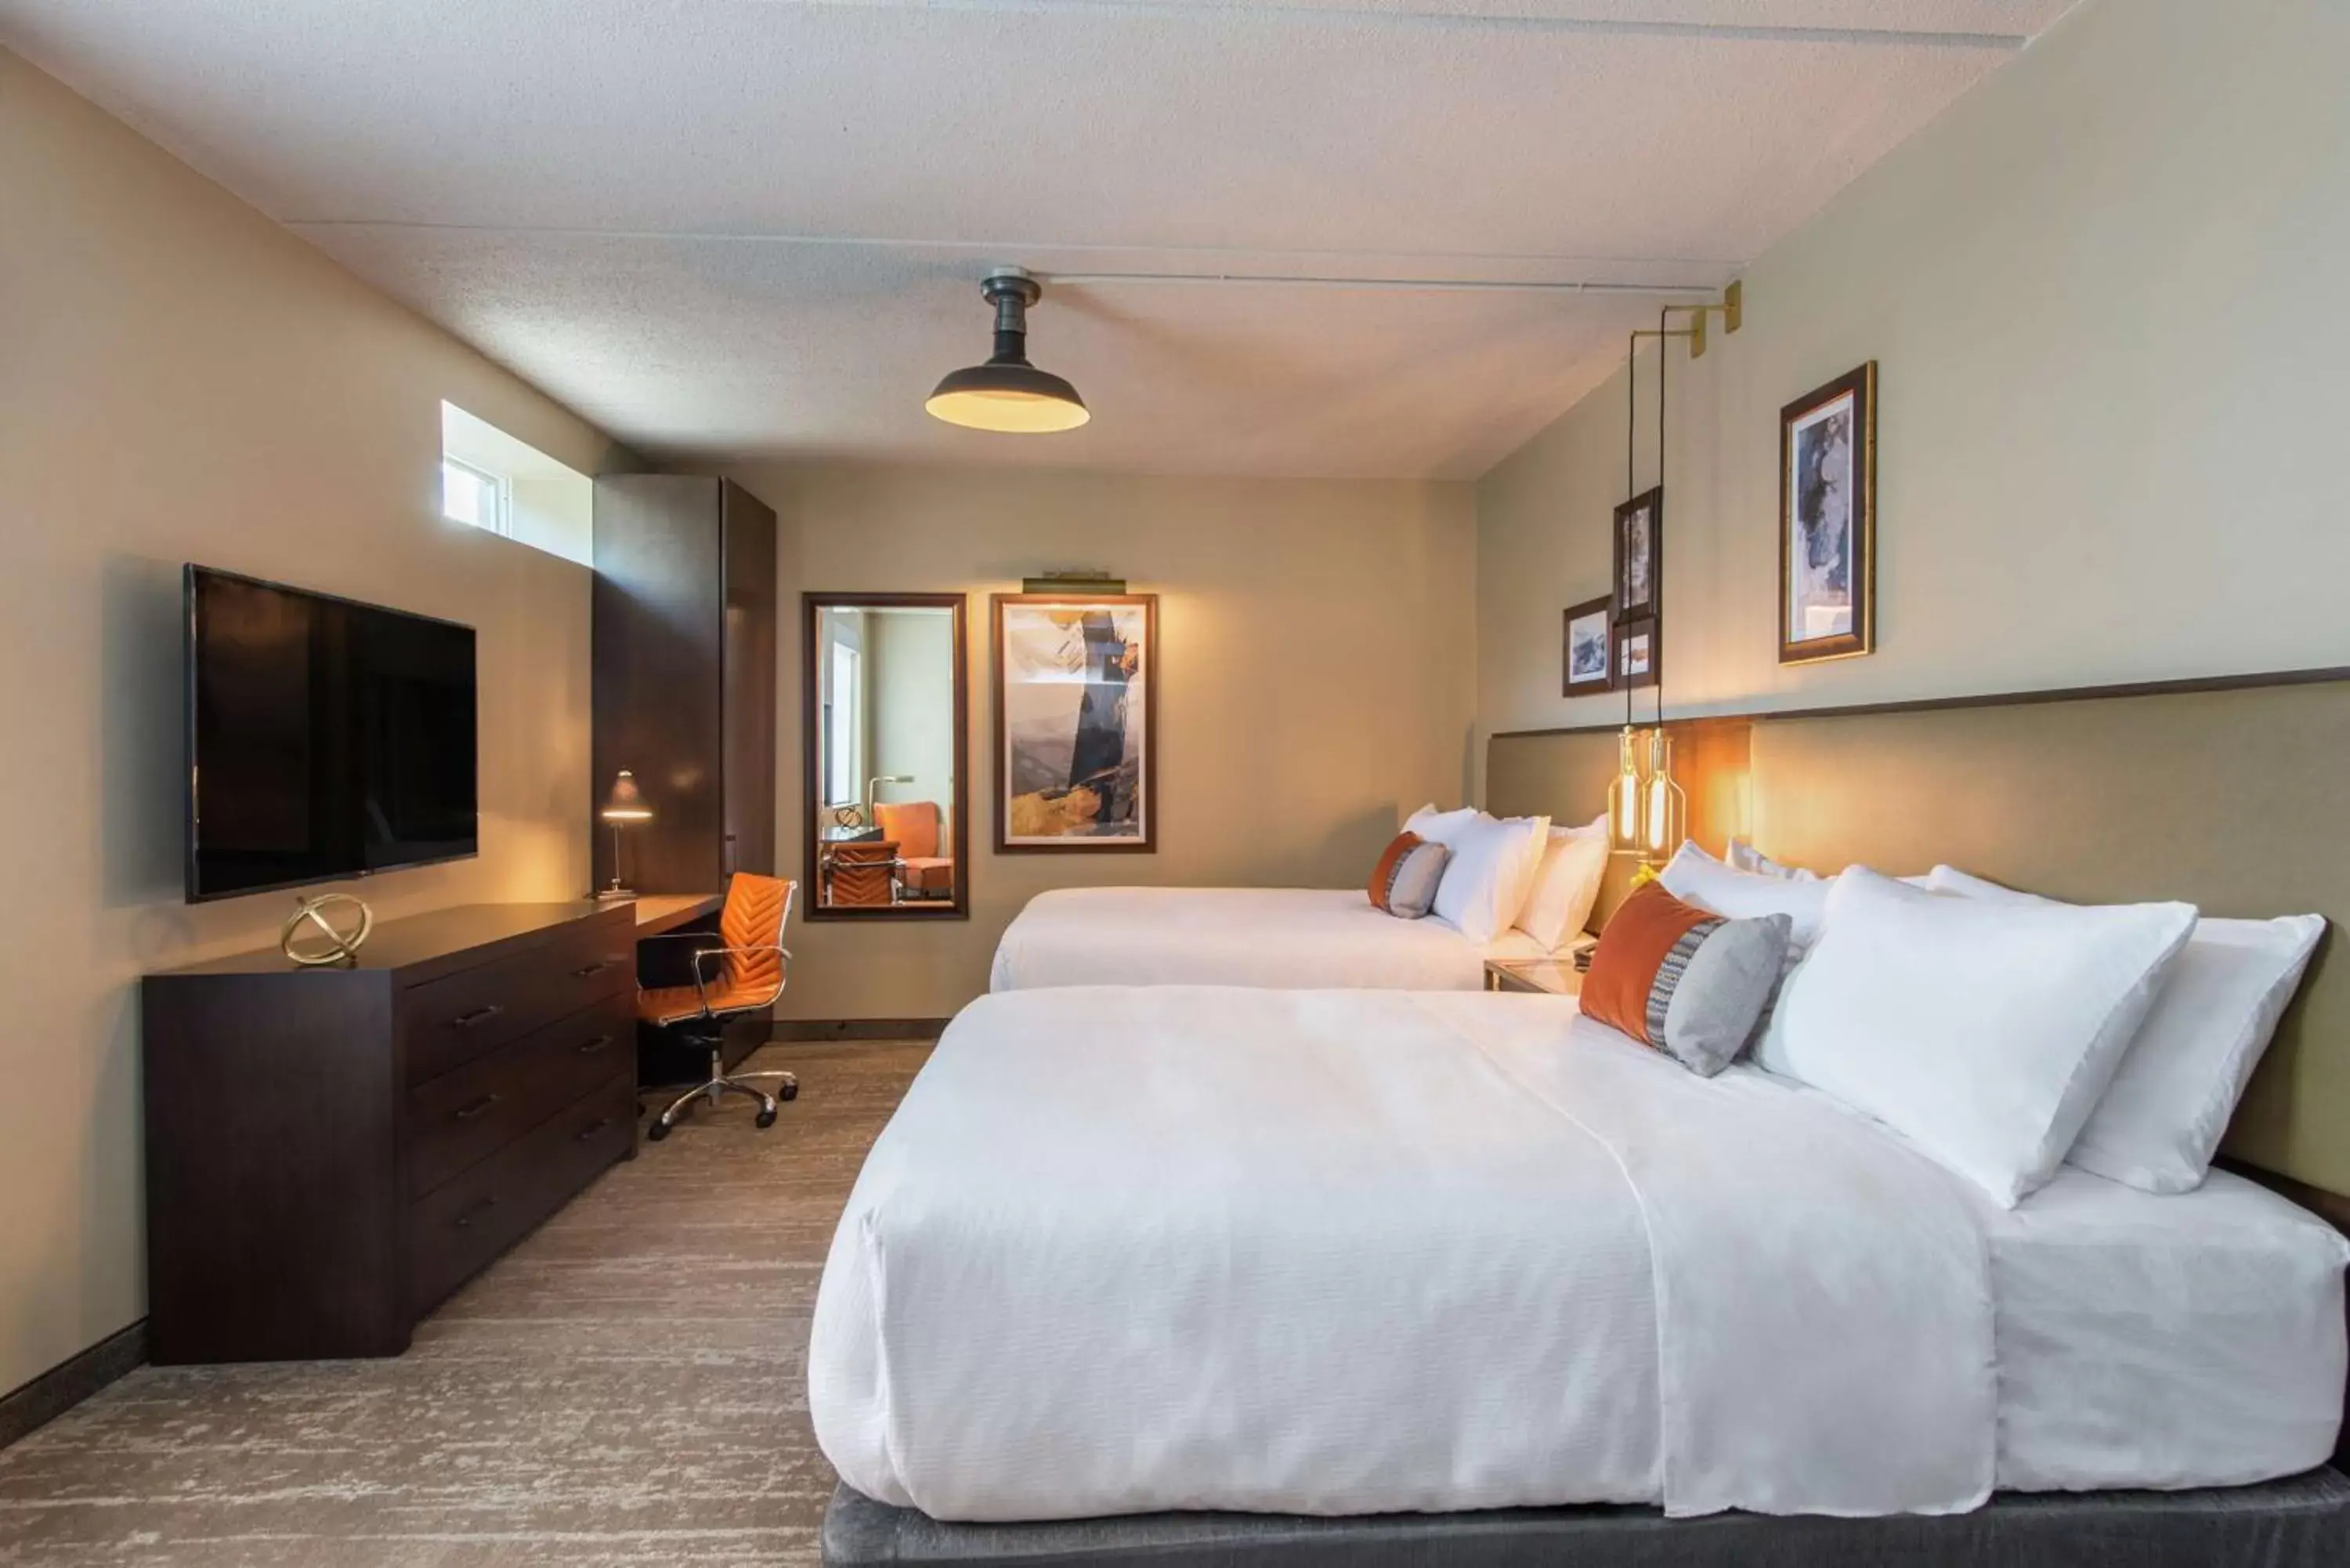 Bedroom in Hotel Saranac, Curio Collection By Hilton